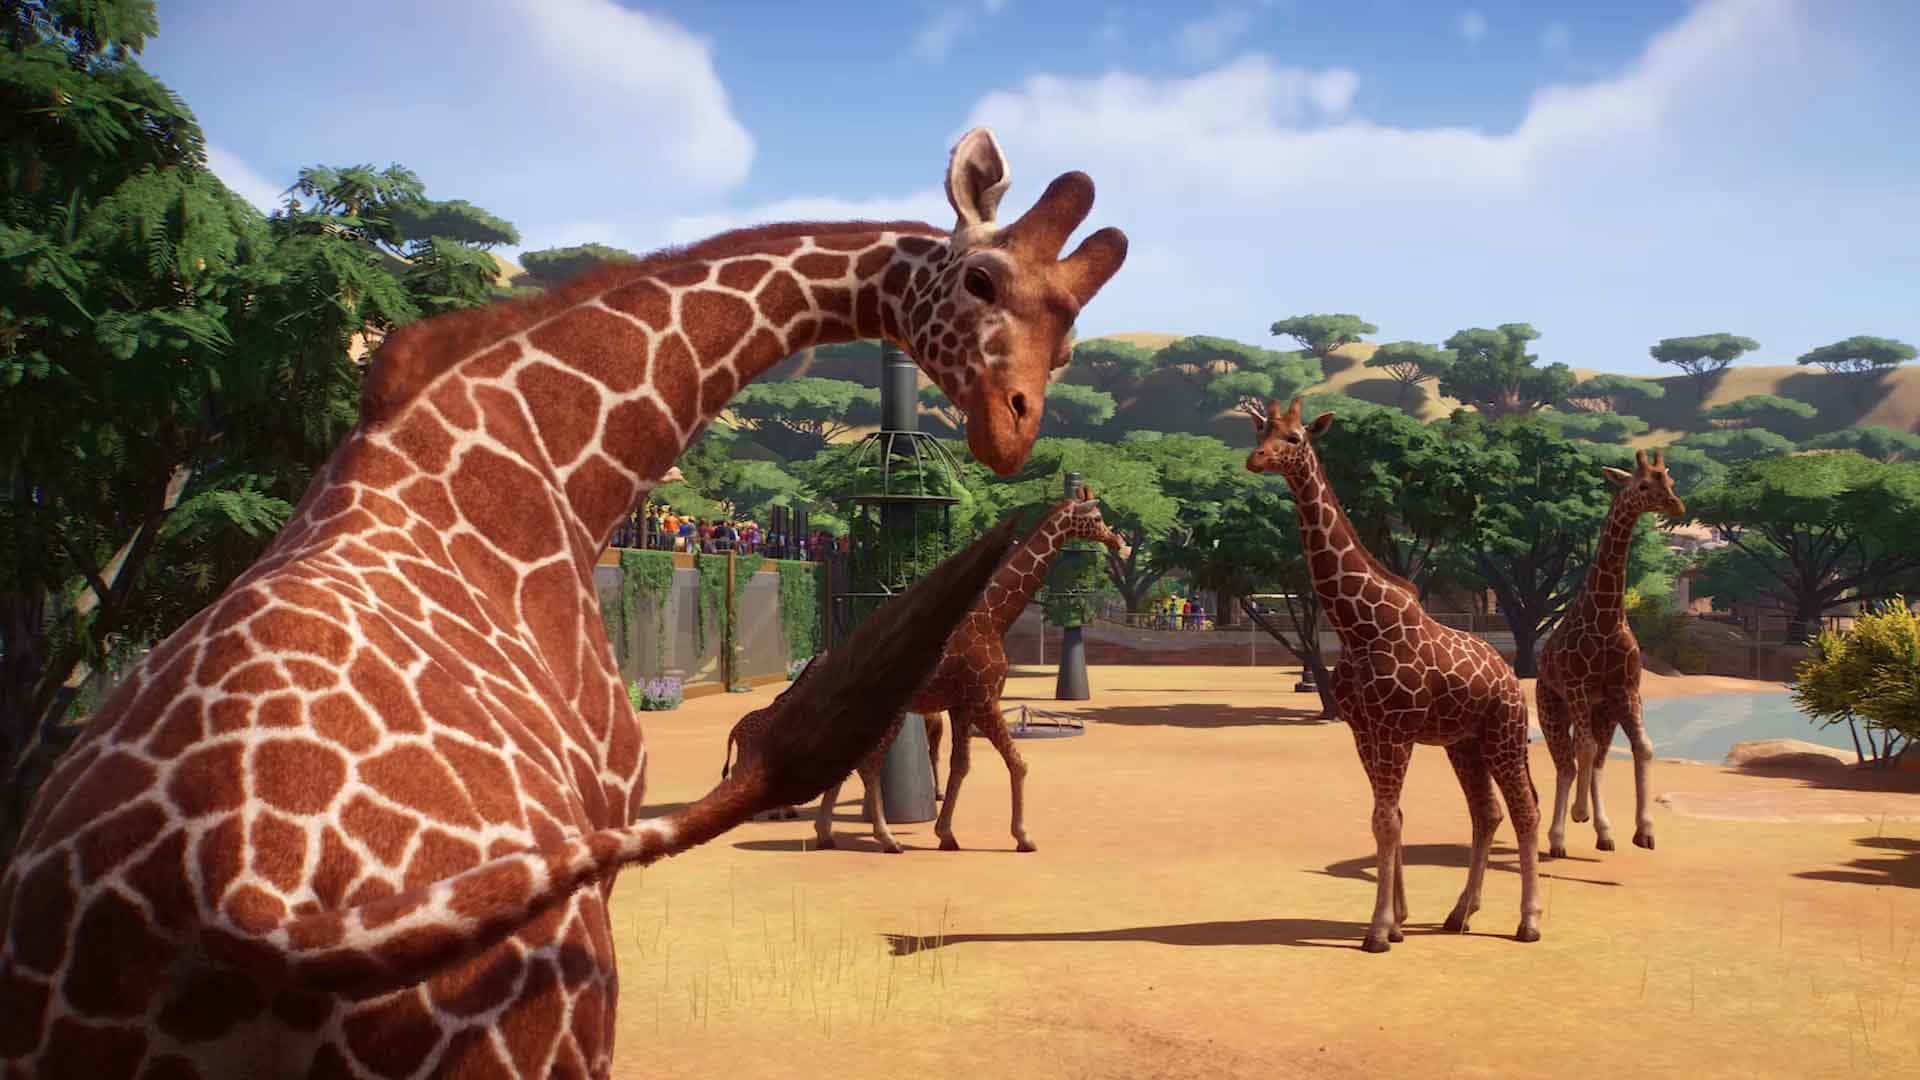 África ofrece, con diferencia, la mayor selección posible de animales exóticos y la jirafa es un clásico del zoo